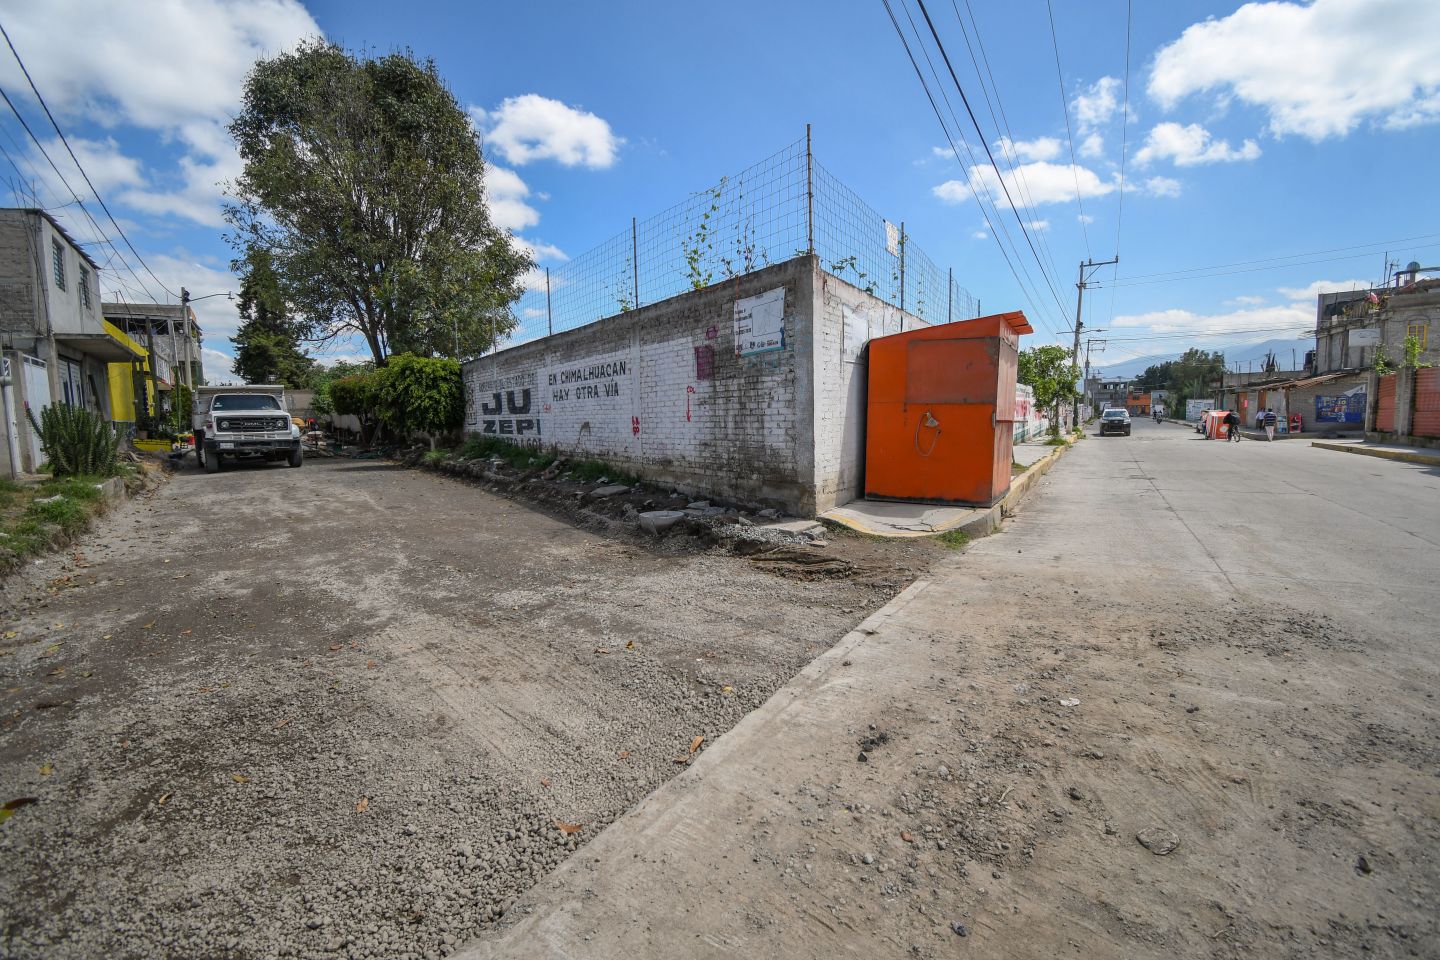 
Avanza pavimentaciones en Chimalhuacán
